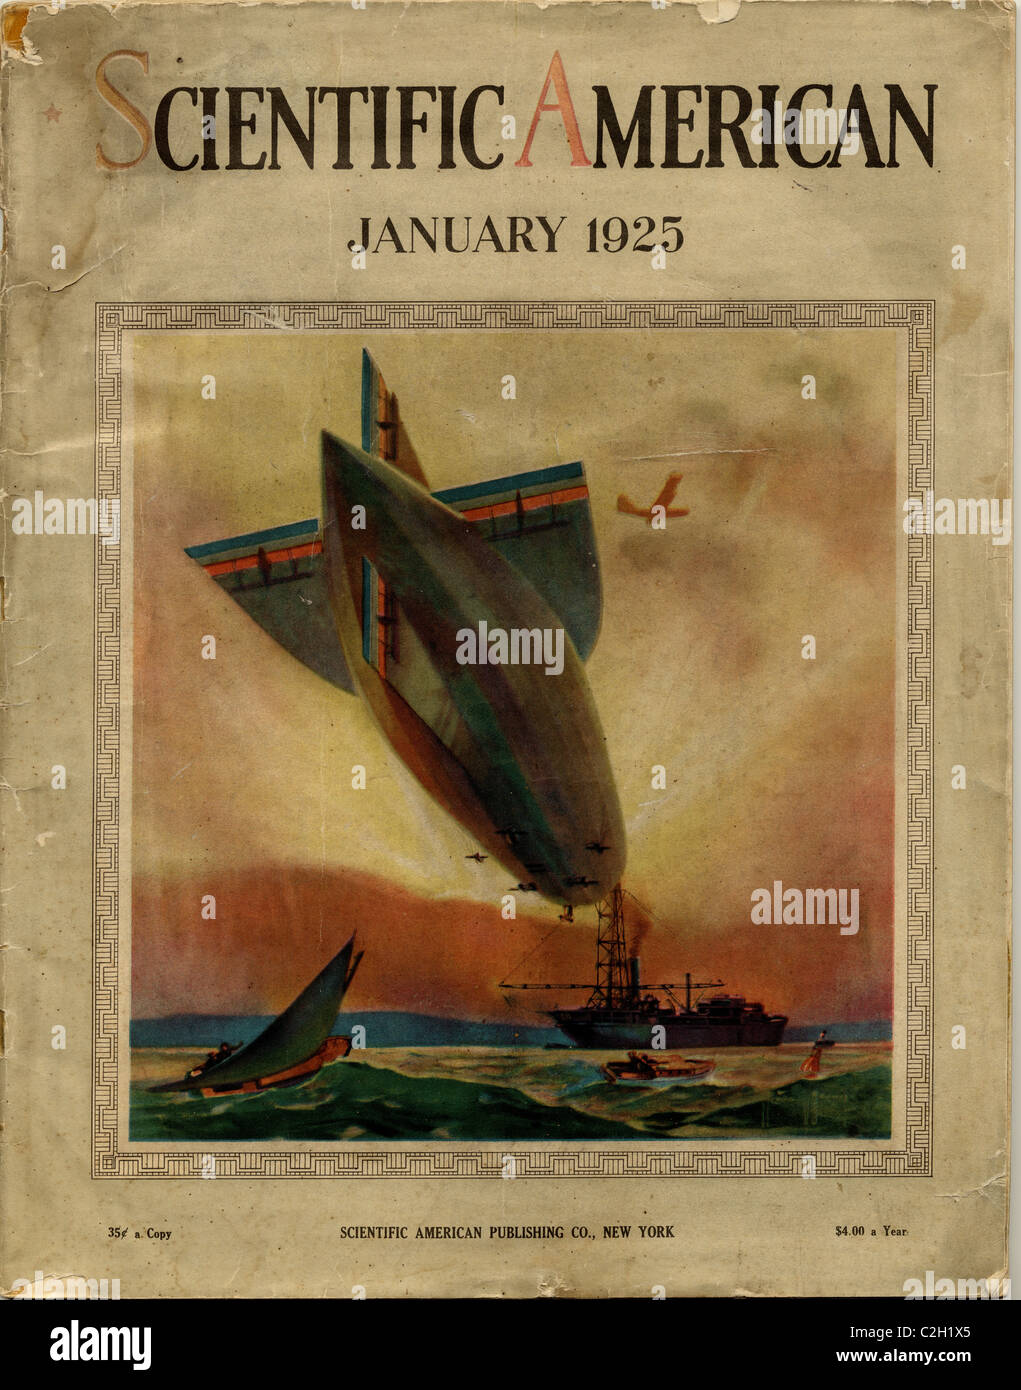 Scientific American couvrir à partir de 1925 montrant un dirigeable à d'un navire en mer. Banque D'Images